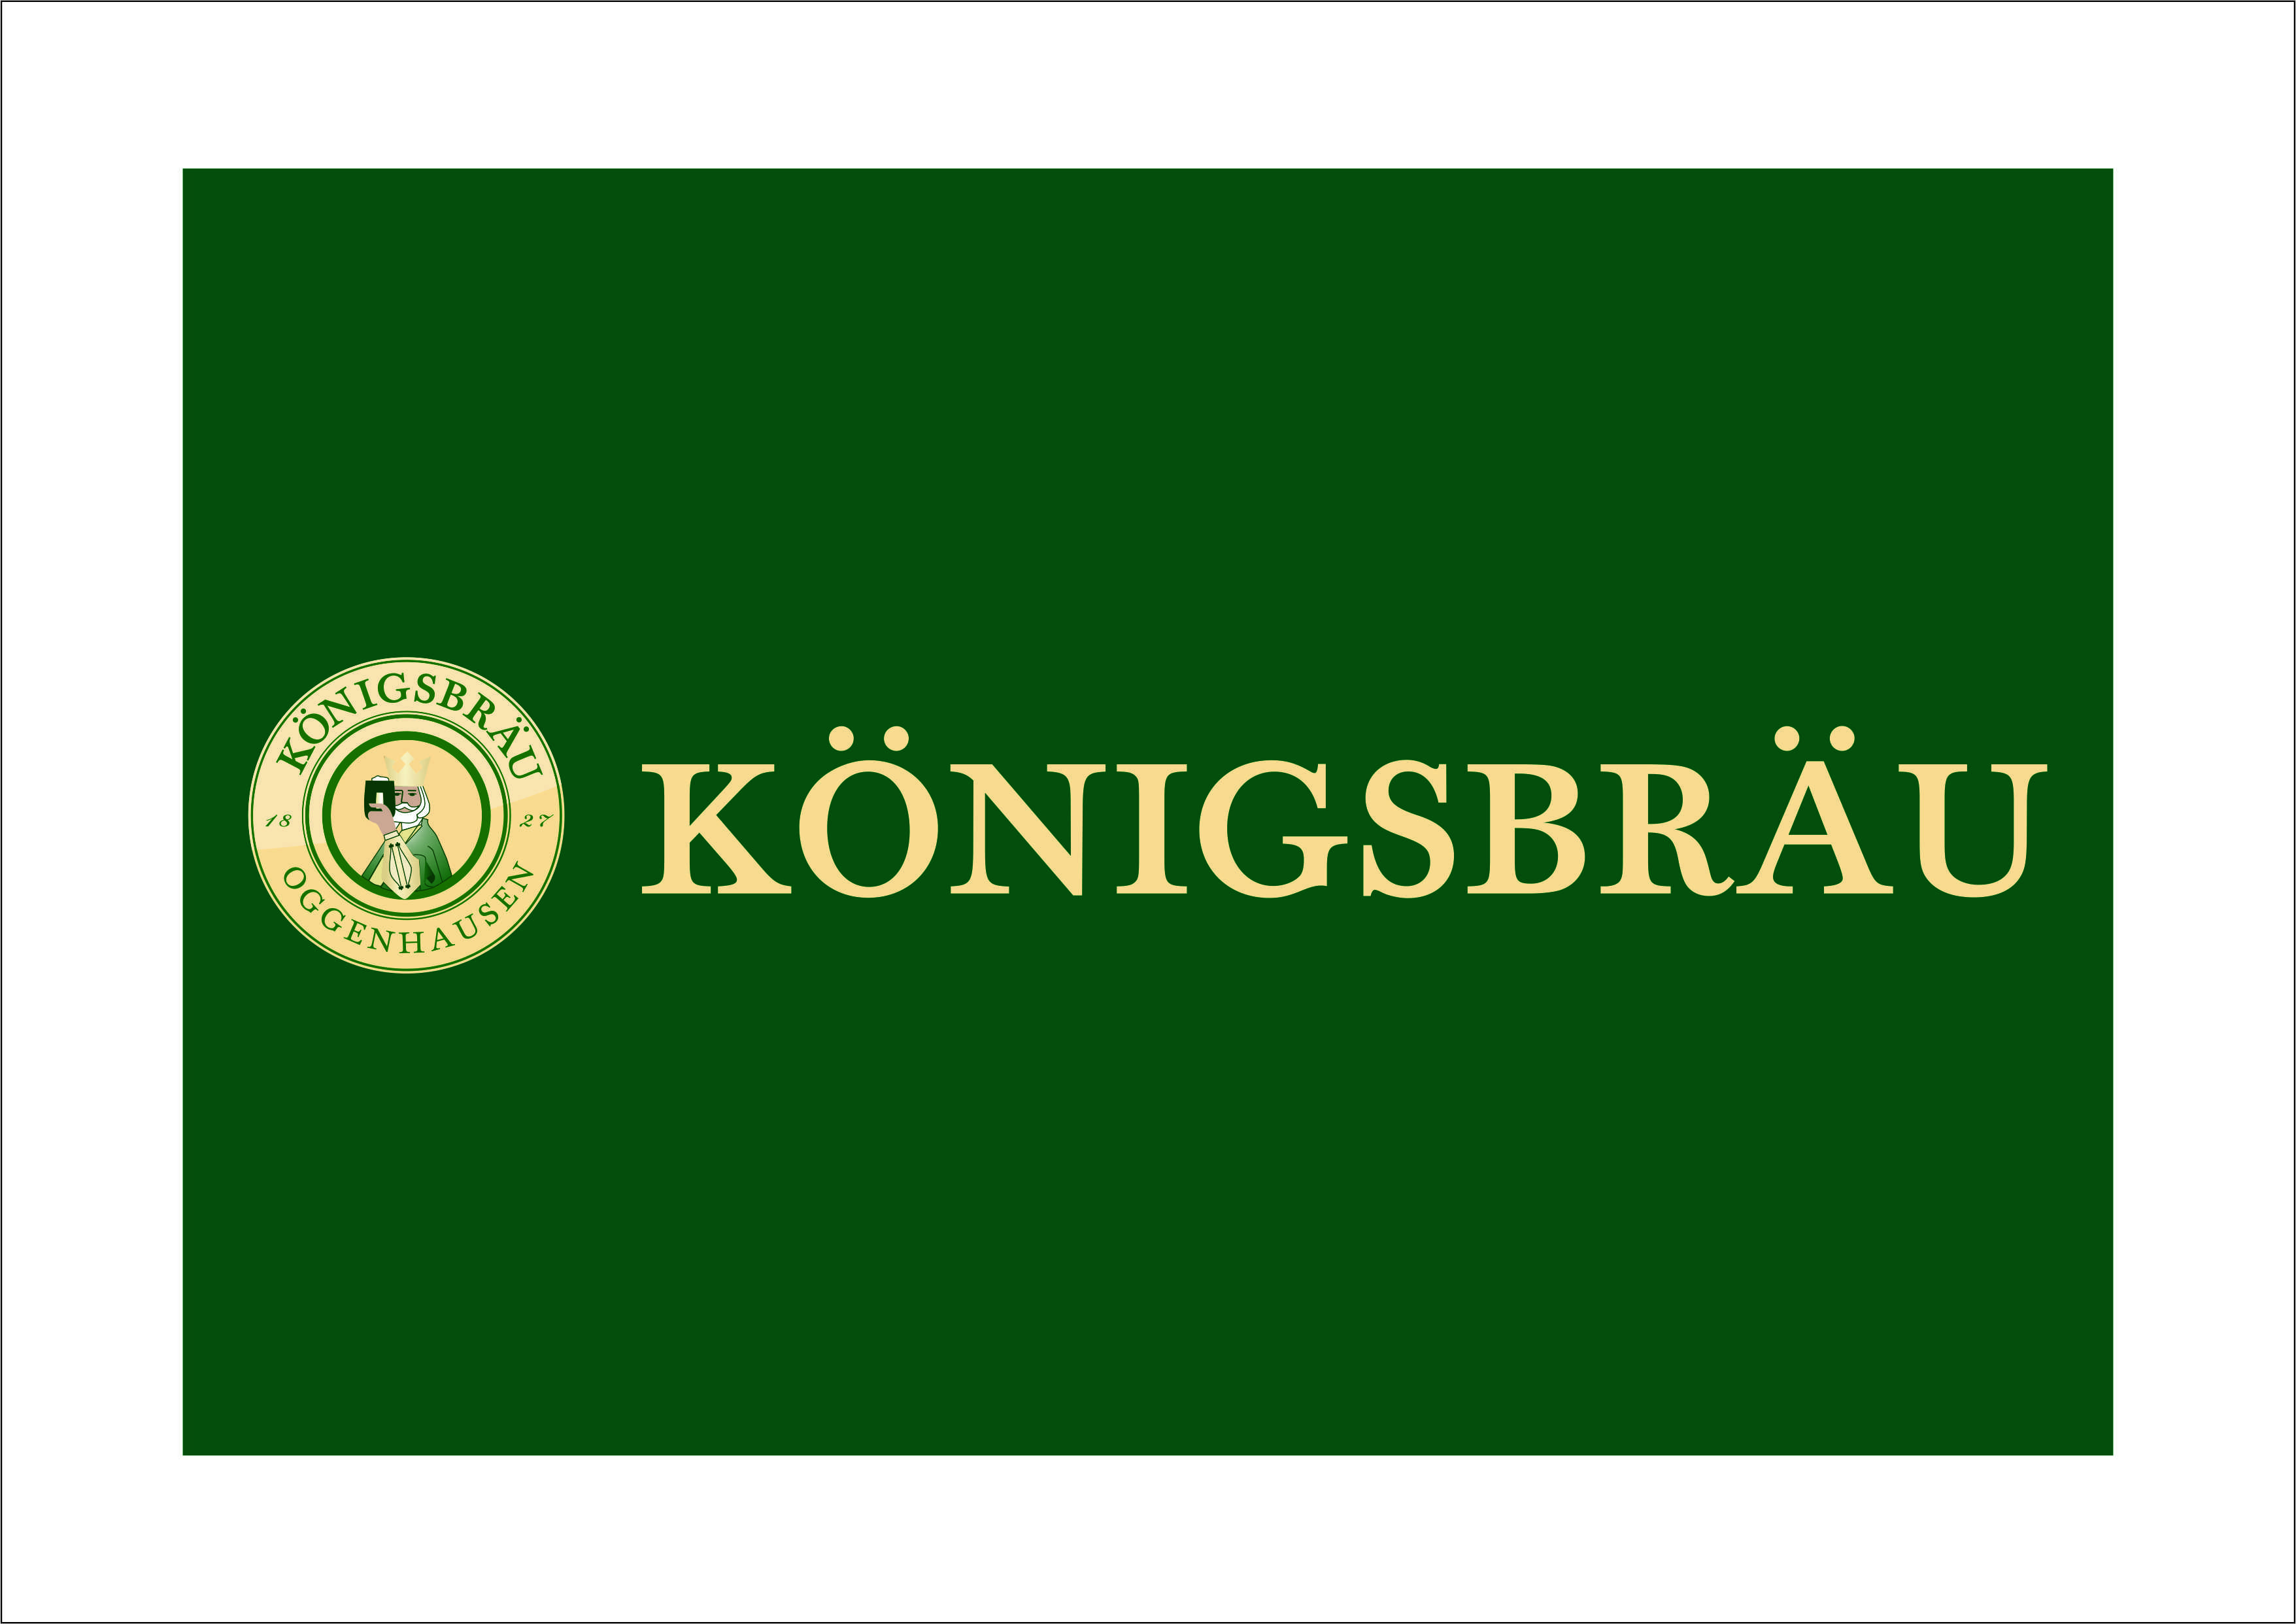 Königsbräu Majer GmbH & Co.KG